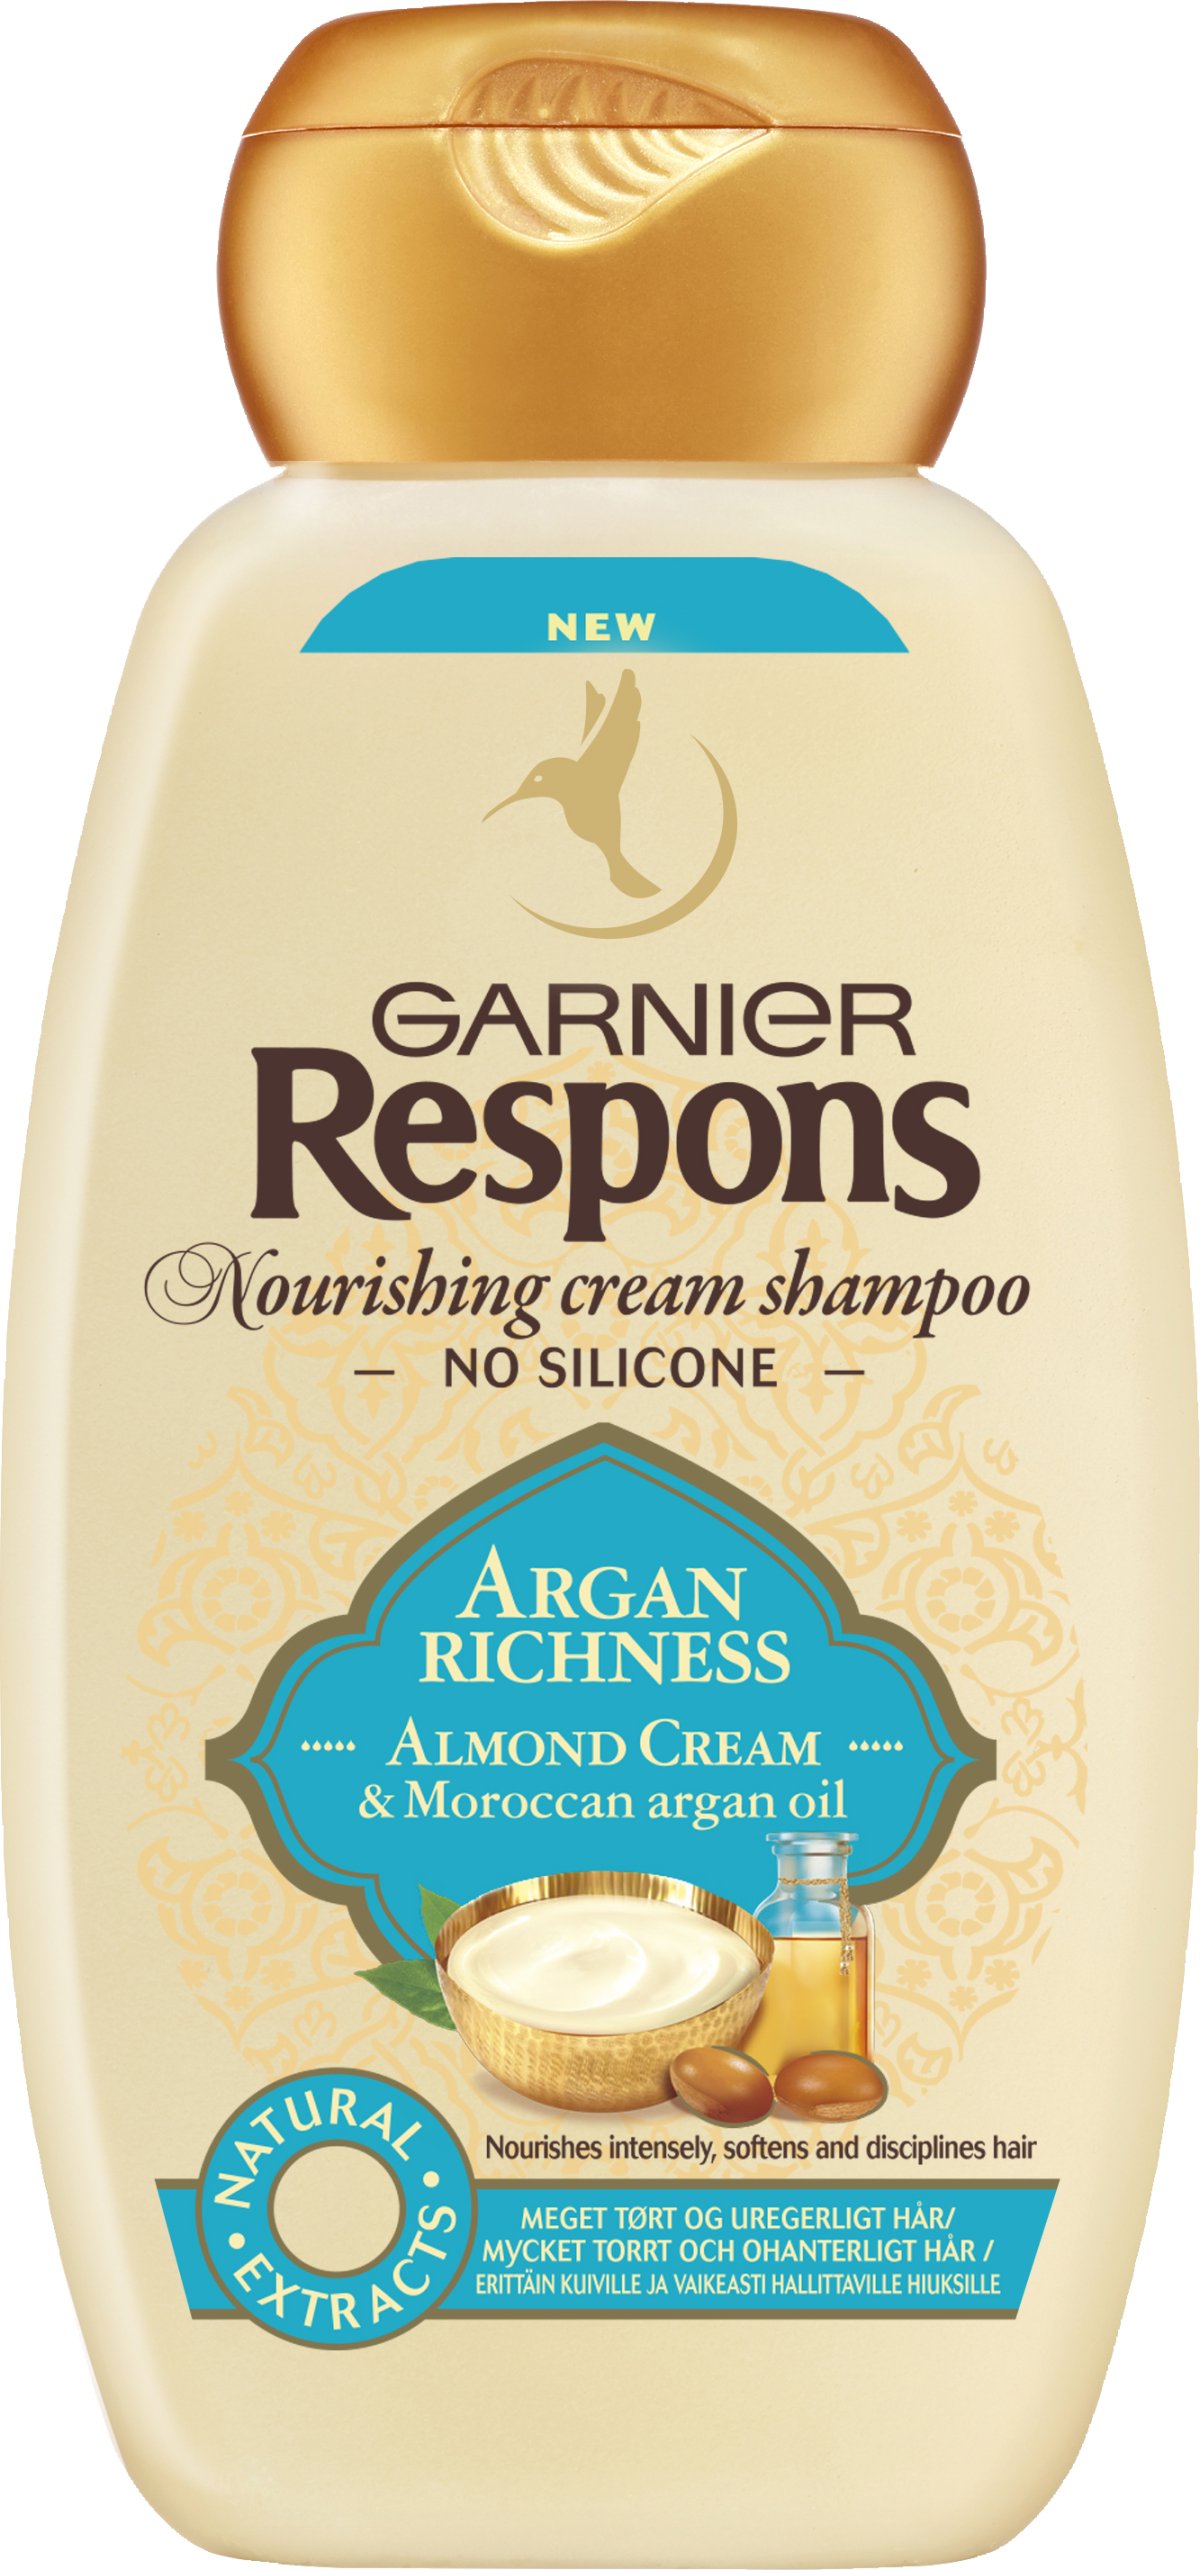 Garnier Respons Shampoo Argan Richness 250 - PERSONLIG PLEJE - VIN MED MERE